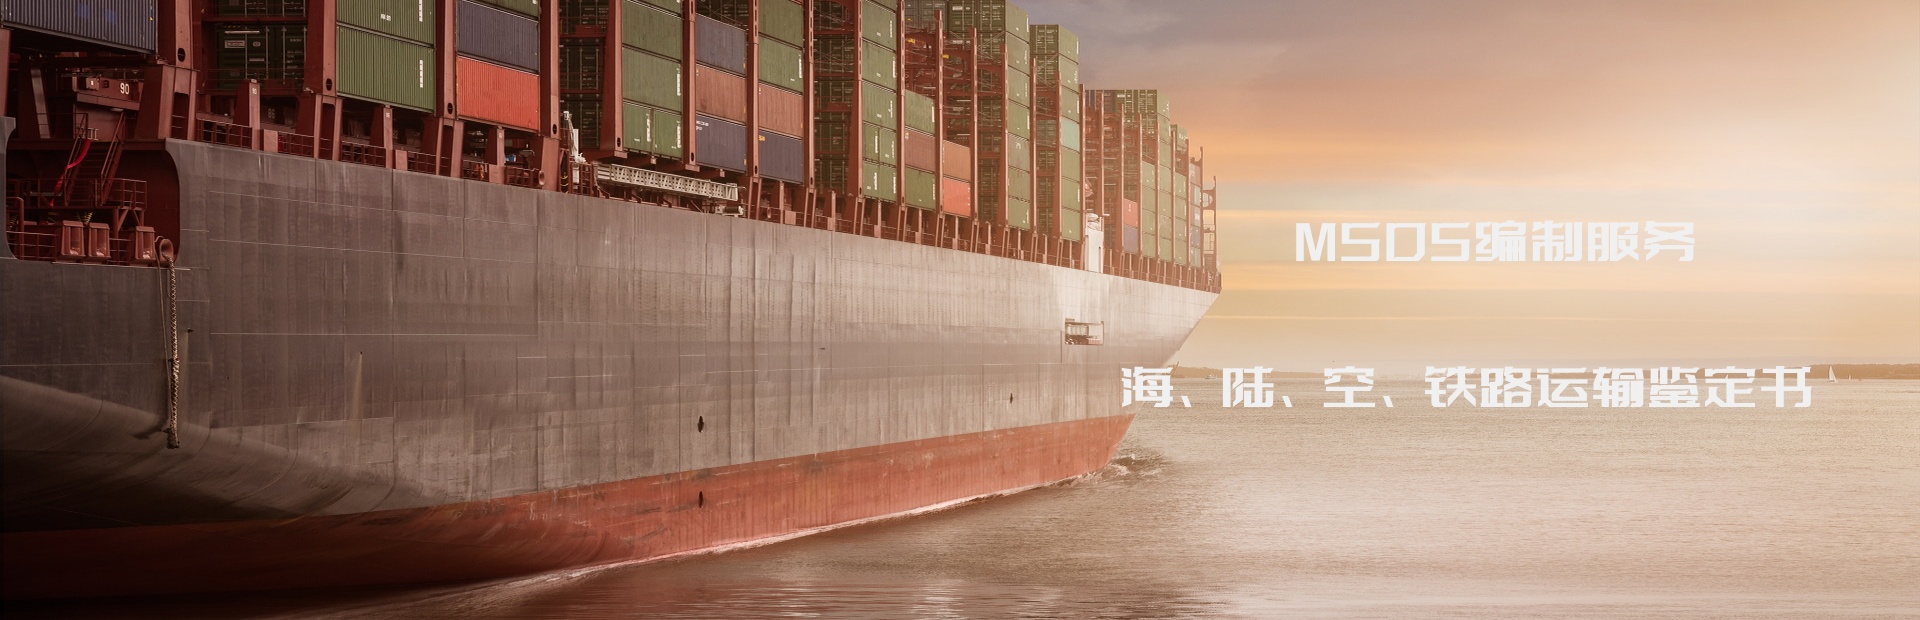 运输鉴定检测、海运鉴定、上海化工院海运鉴定服务